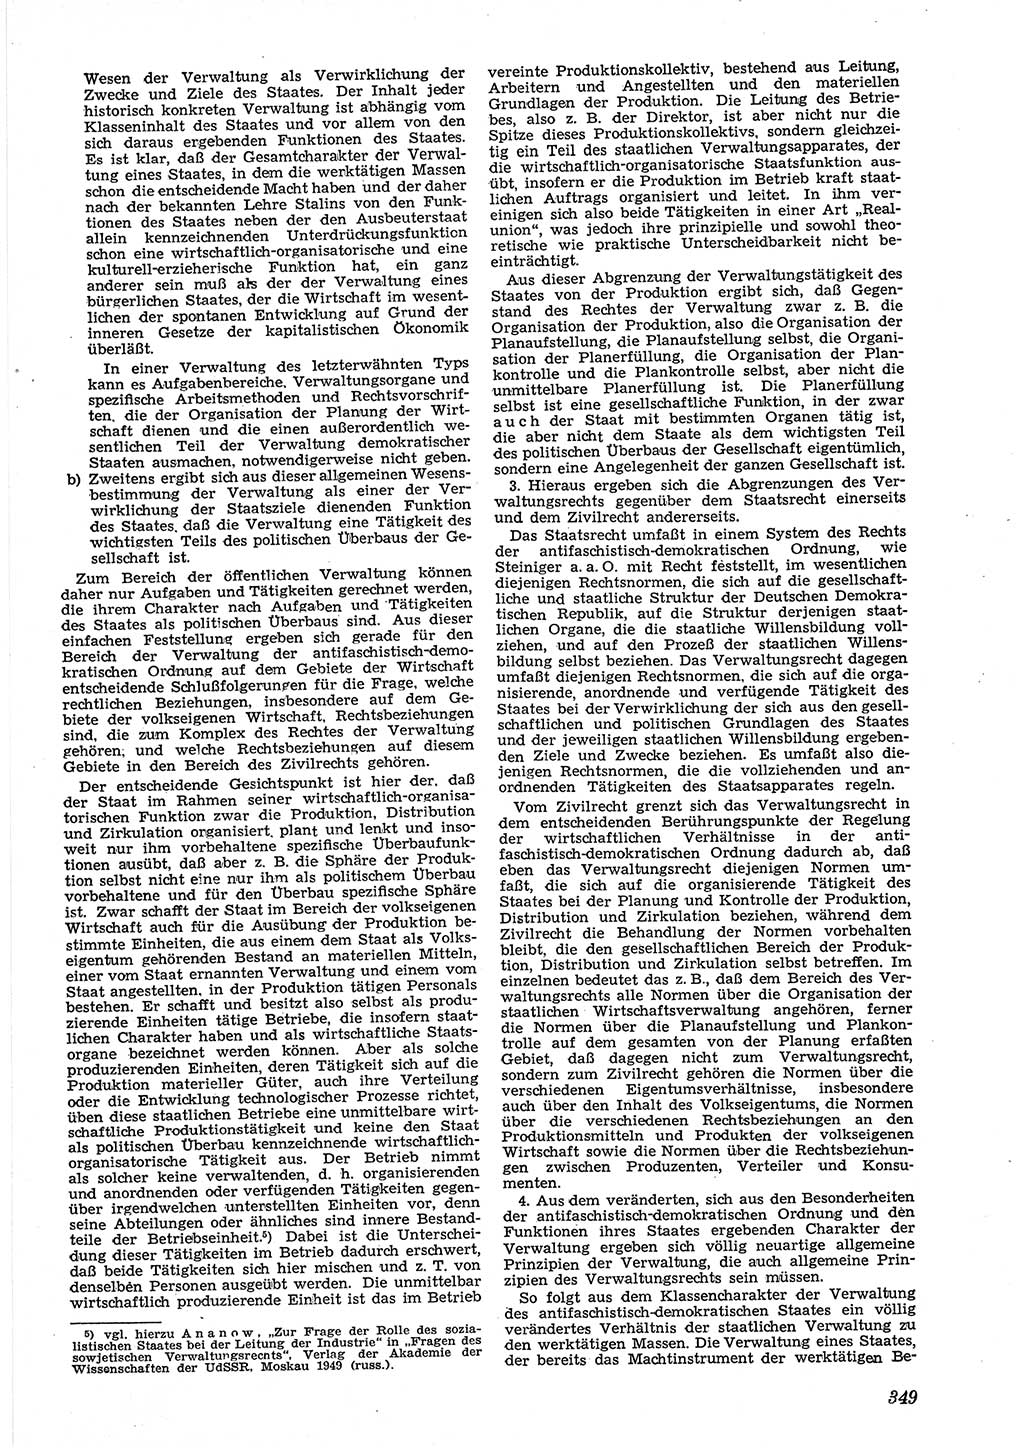 Neue Justiz (NJ), Zeitschrift für Recht und Rechtswissenschaft [Deutsche Demokratische Republik (DDR)], 5. Jahrgang 1951, Seite 349 (NJ DDR 1951, S. 349)